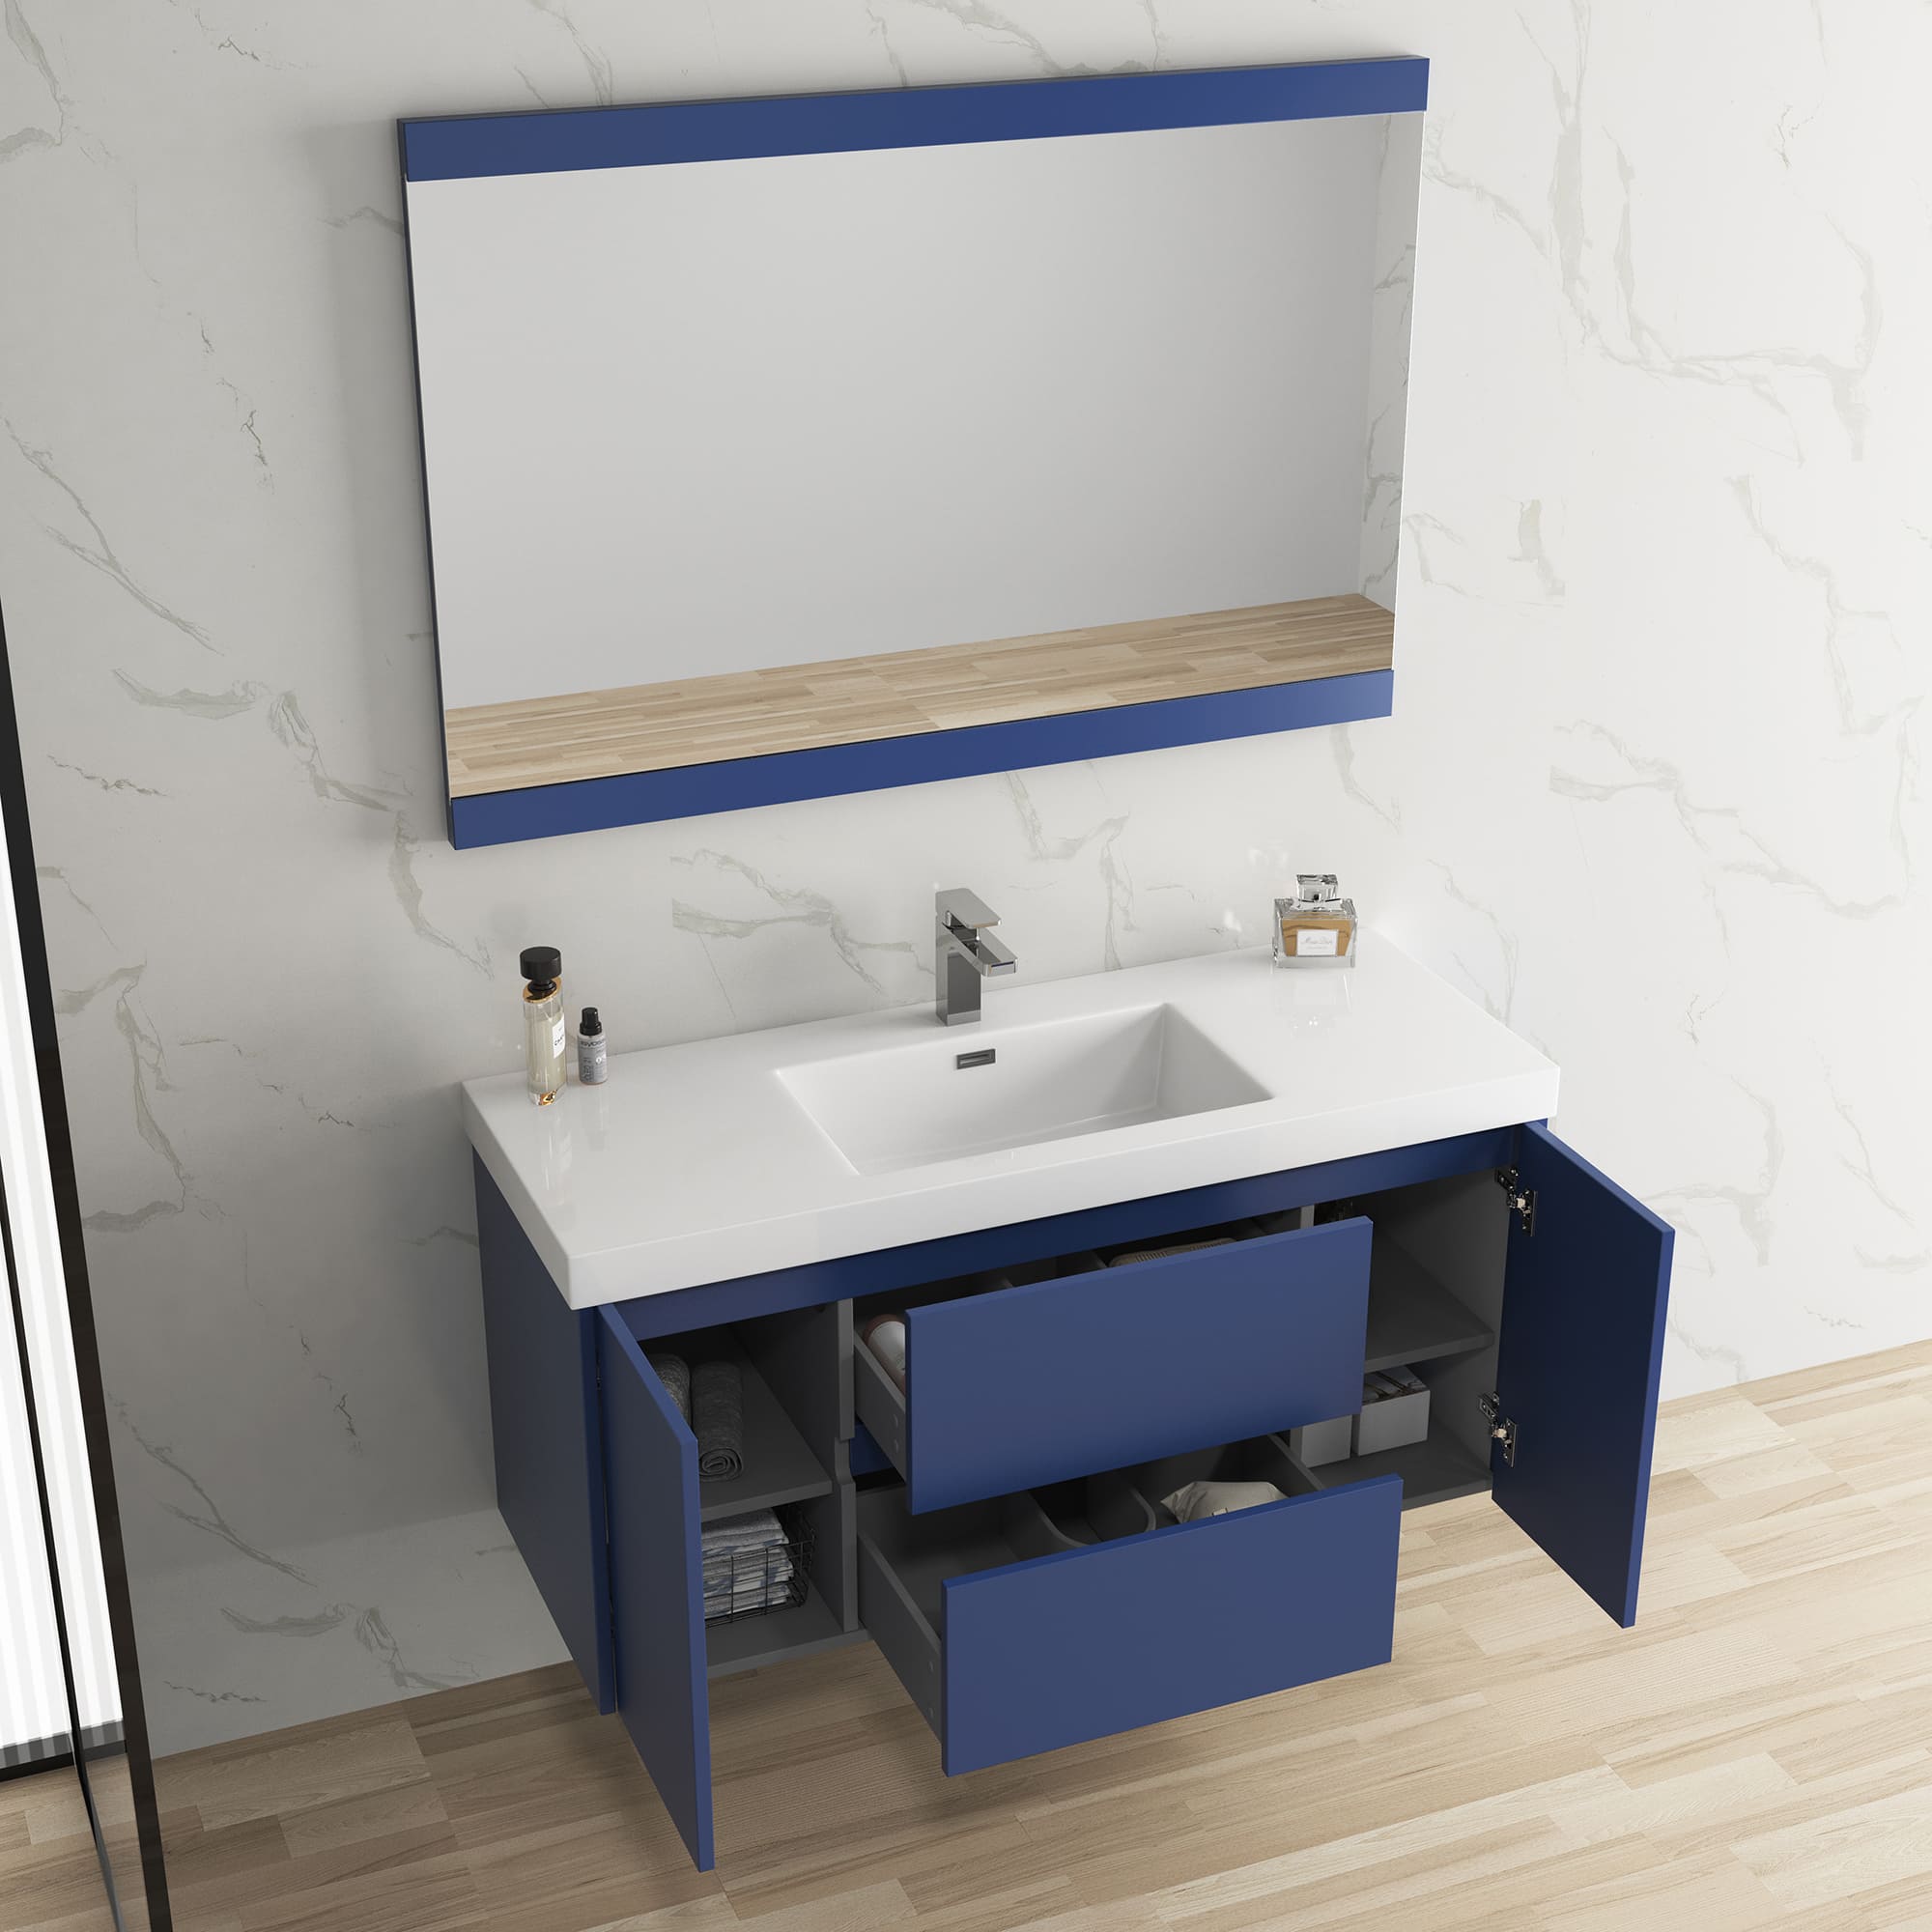 Valencia 48" Bathroom Vanity  #size_48"  #color_navy blue